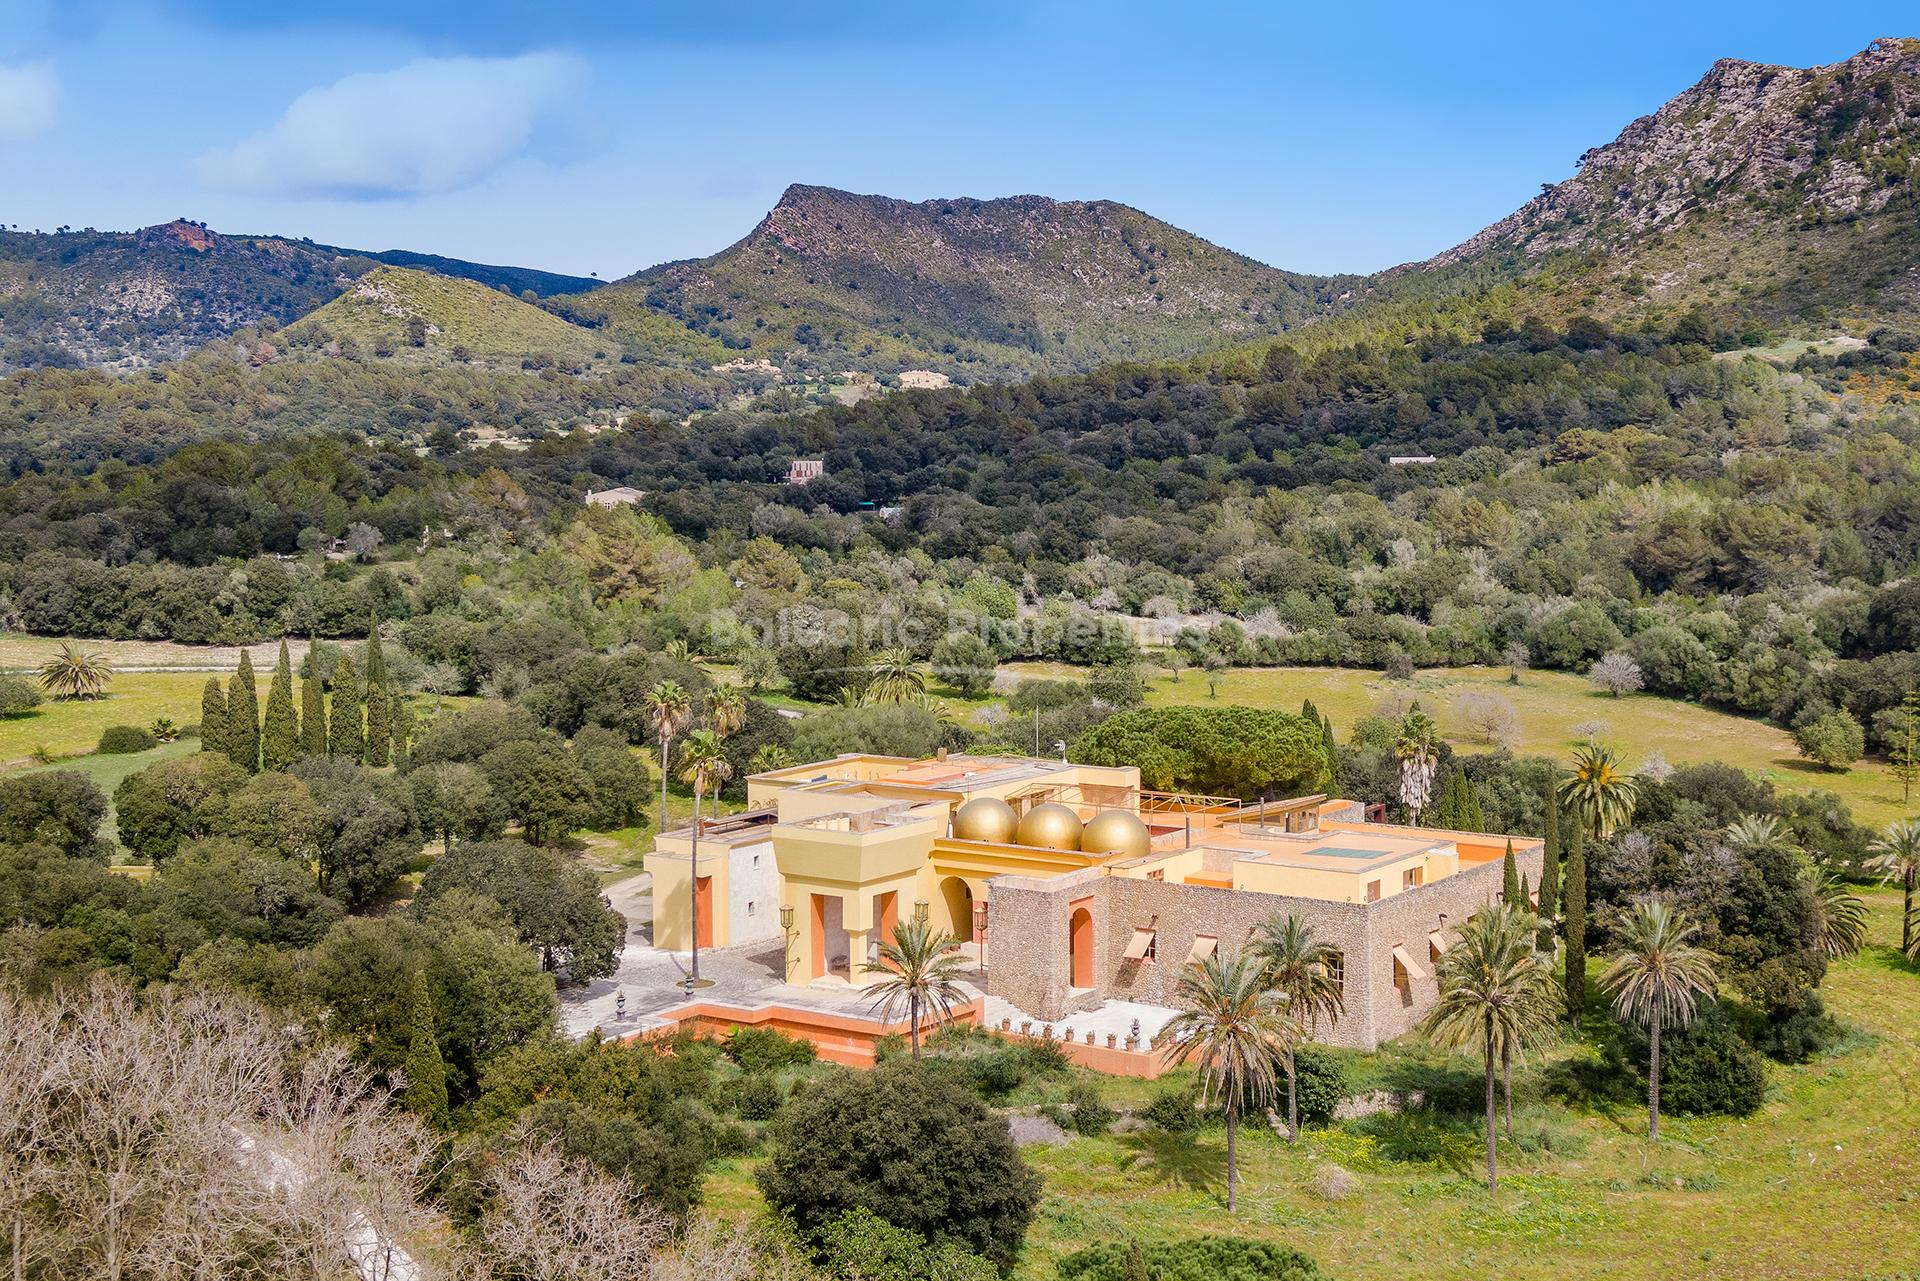 Finca de lujo única con 2 piscinas en venta cerca del pueblo Artá, Mallorca